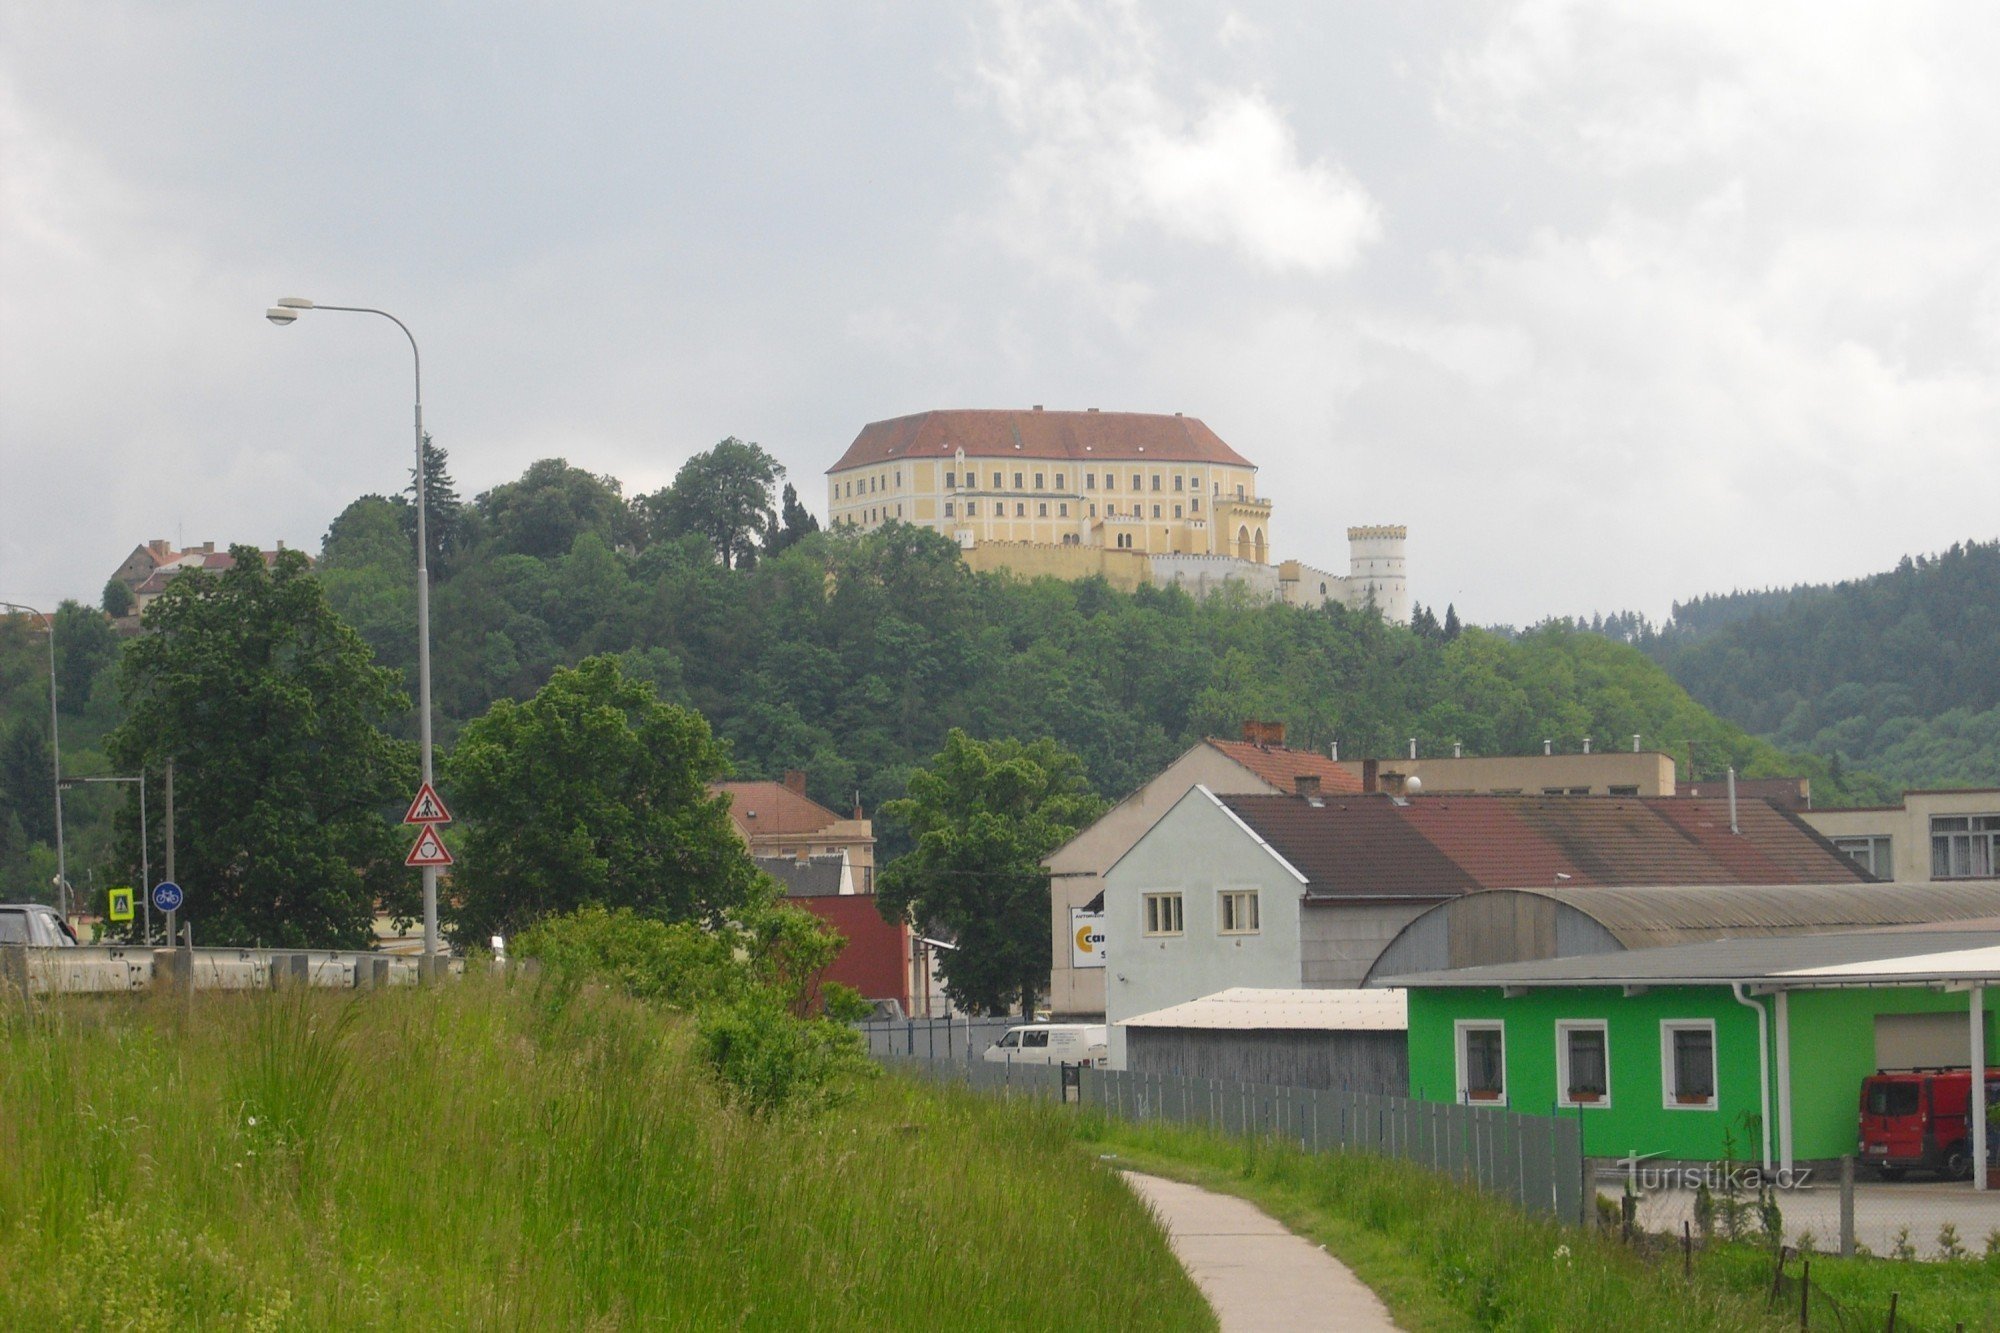 Dvorac Letovice